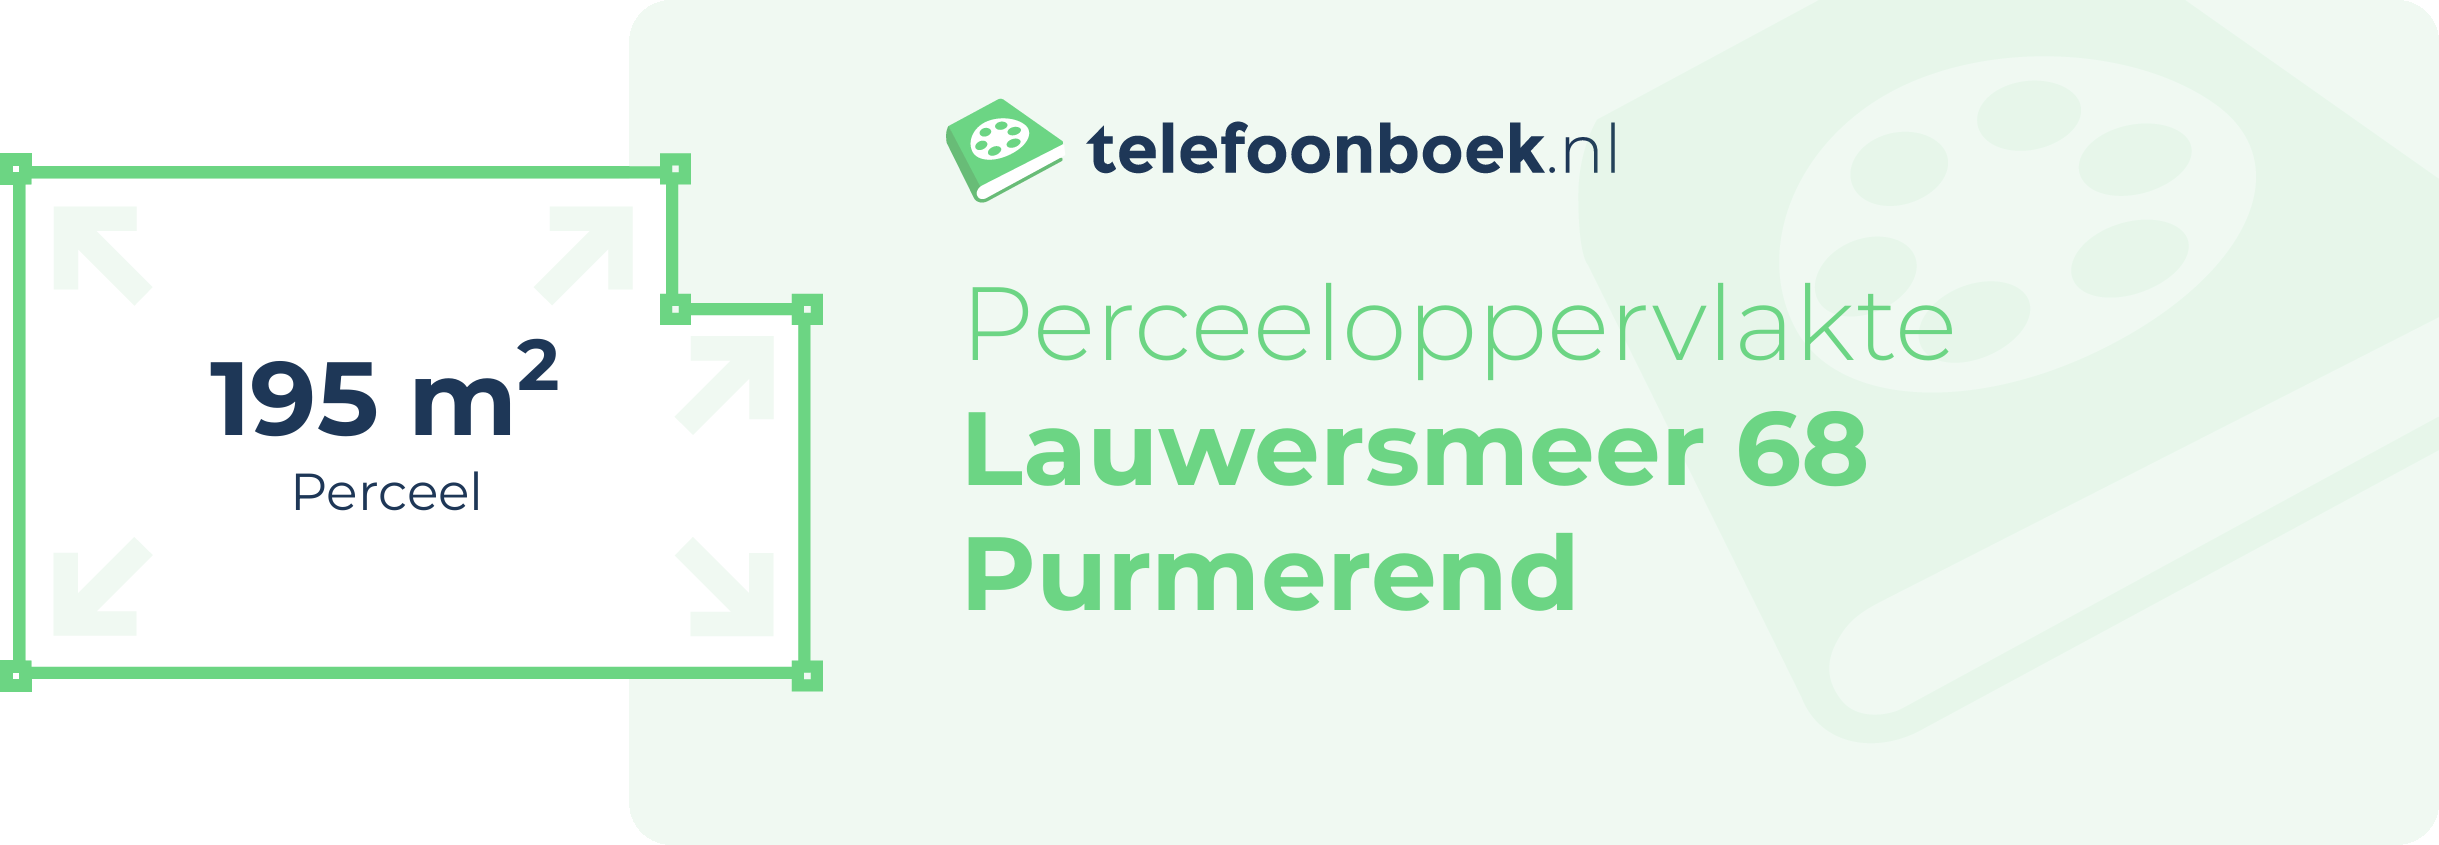 Perceeloppervlakte Lauwersmeer 68 Purmerend